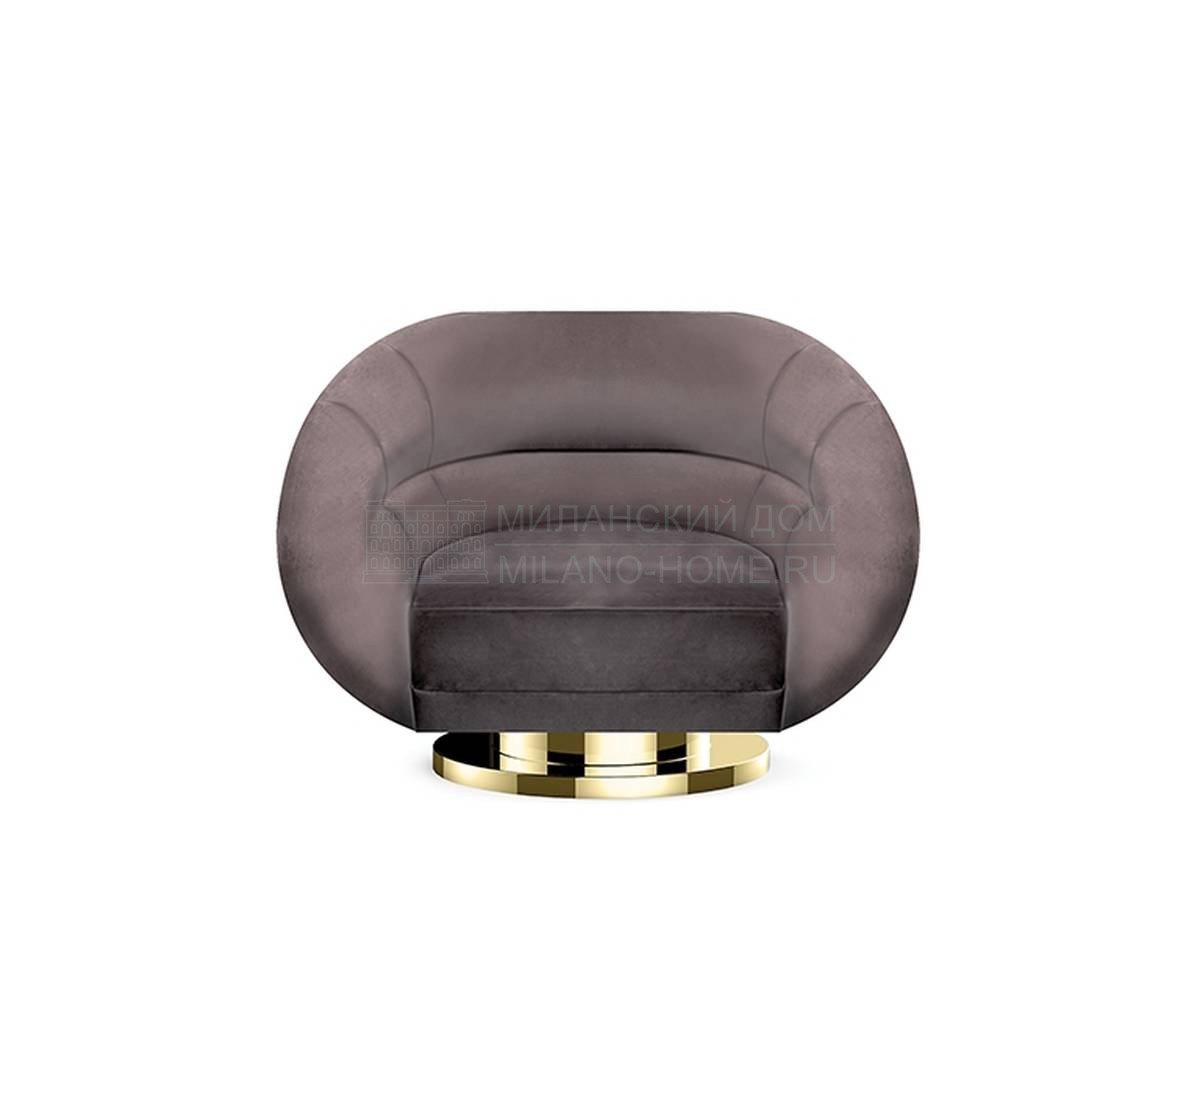 Круглое кресло Mansfield/armchair из Португалии фабрики DELIGHTFULL